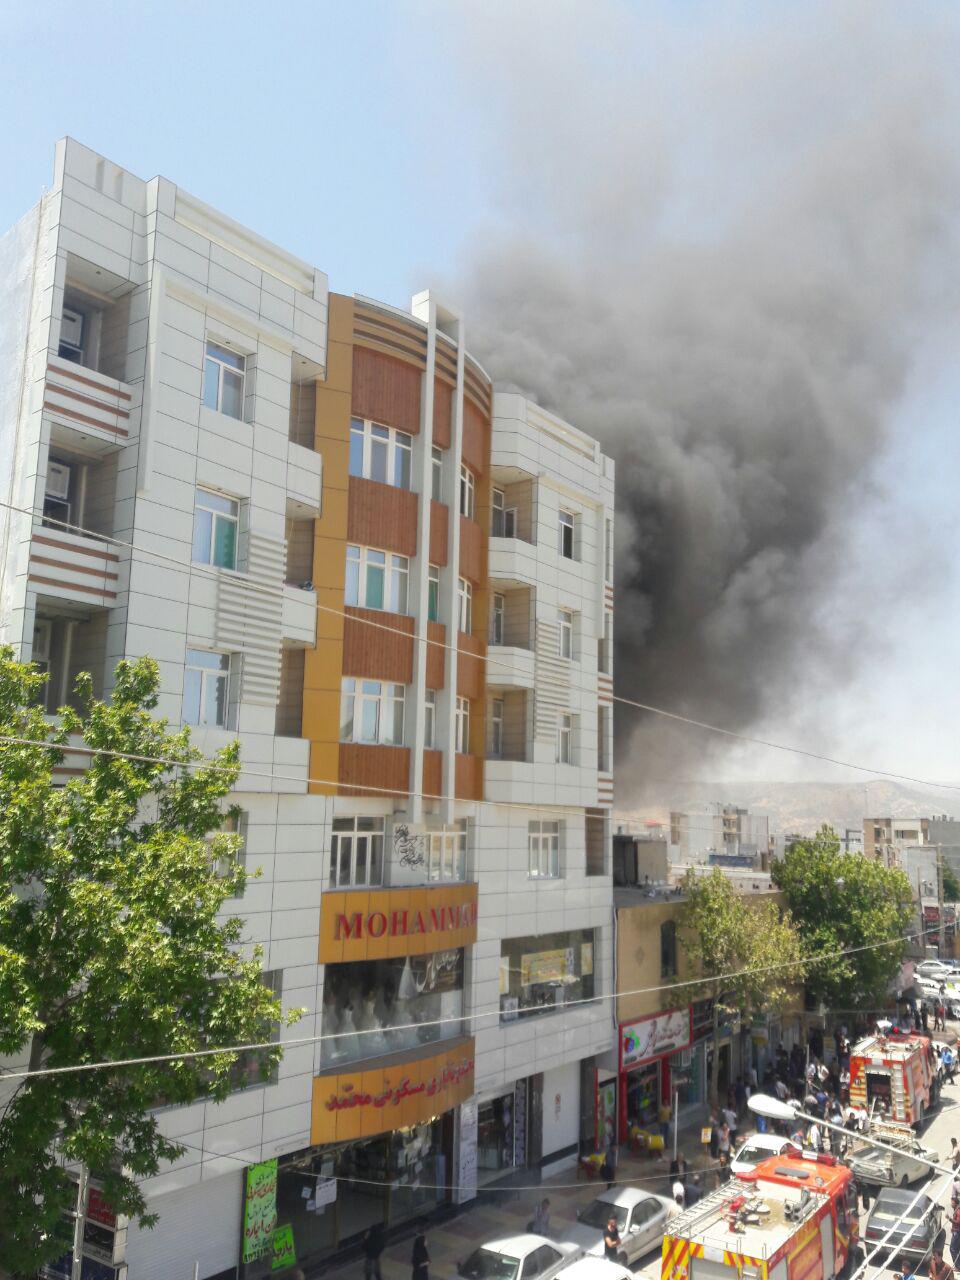 آتش سوزی در ساختمان پزشکان یاسوج/ سلفی ها مانع کار آتش نشانان + تصاویر